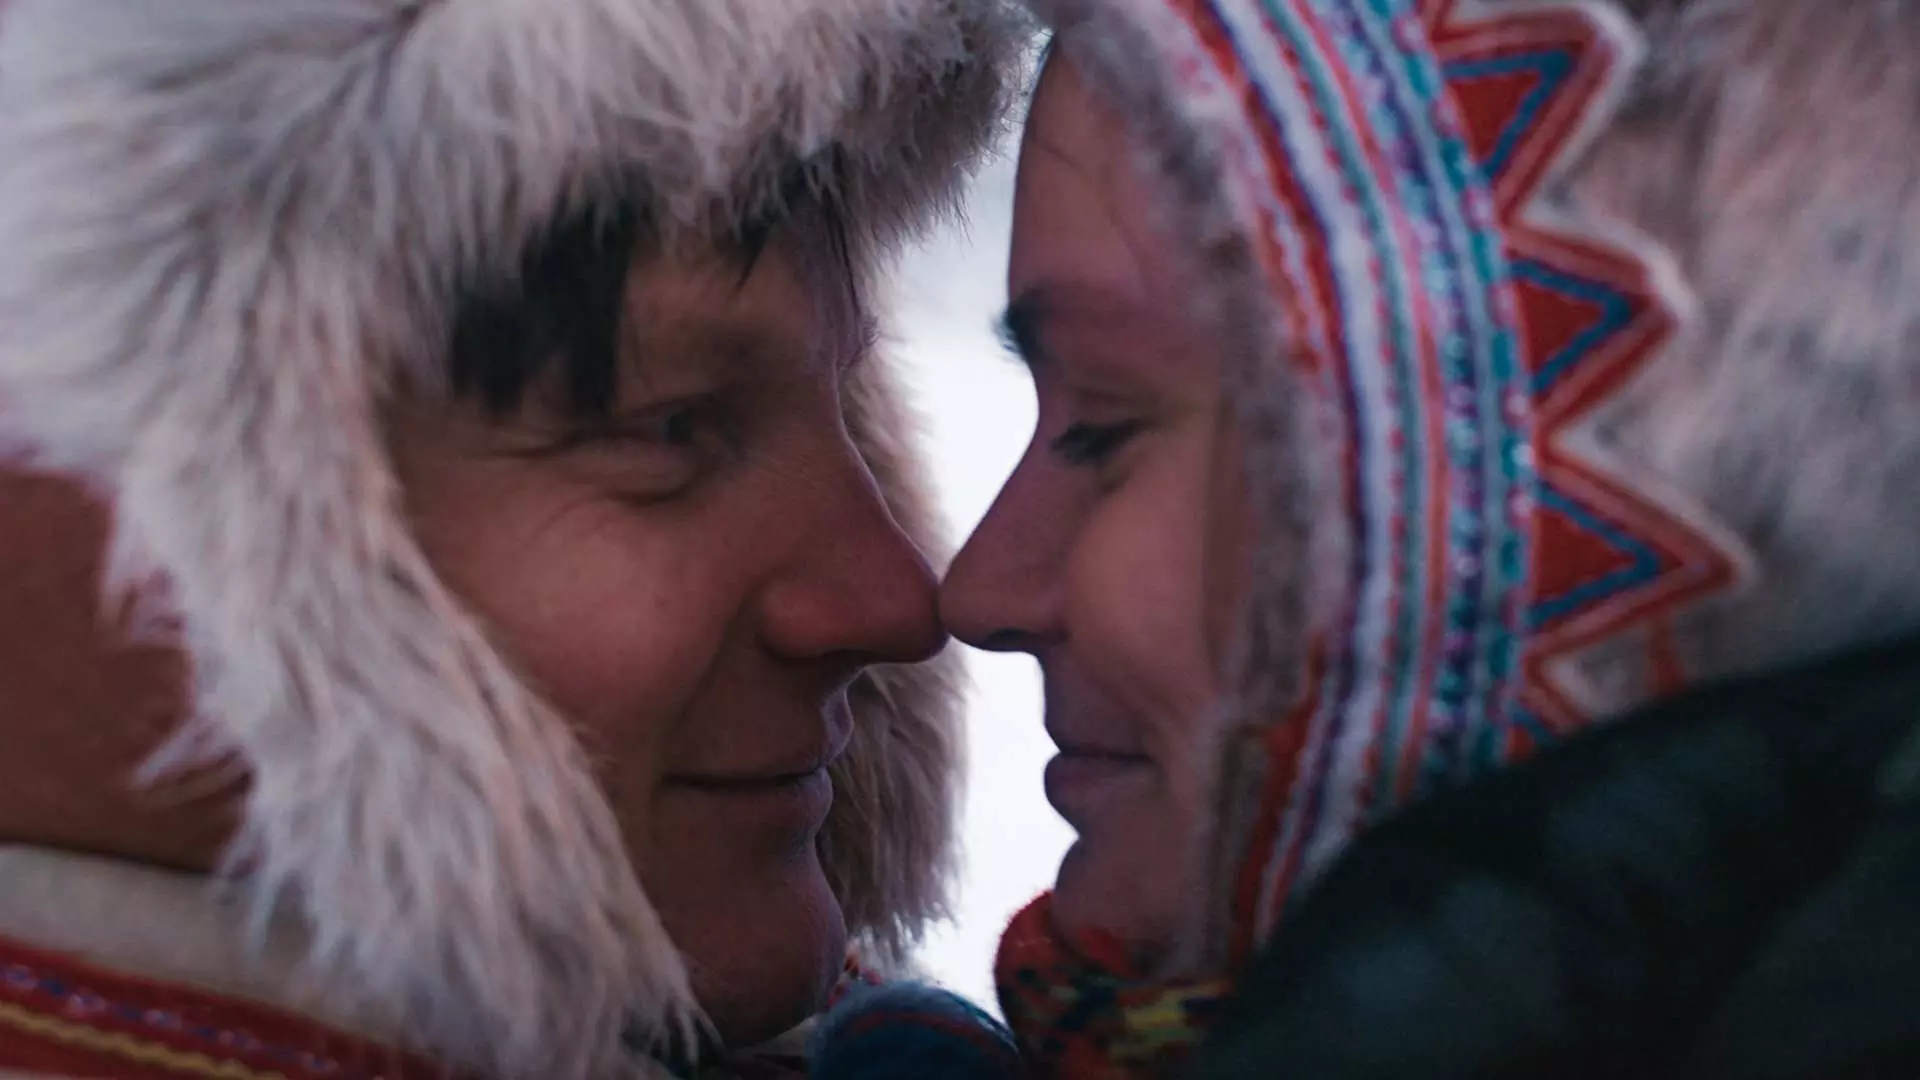 Nærbilde. En ung samisk mann og samisk kvinne i profil. De har nese mot nese og smiler, de ser forelsket ut. De er ikledd tradisjonelle samiske luer. Foto.